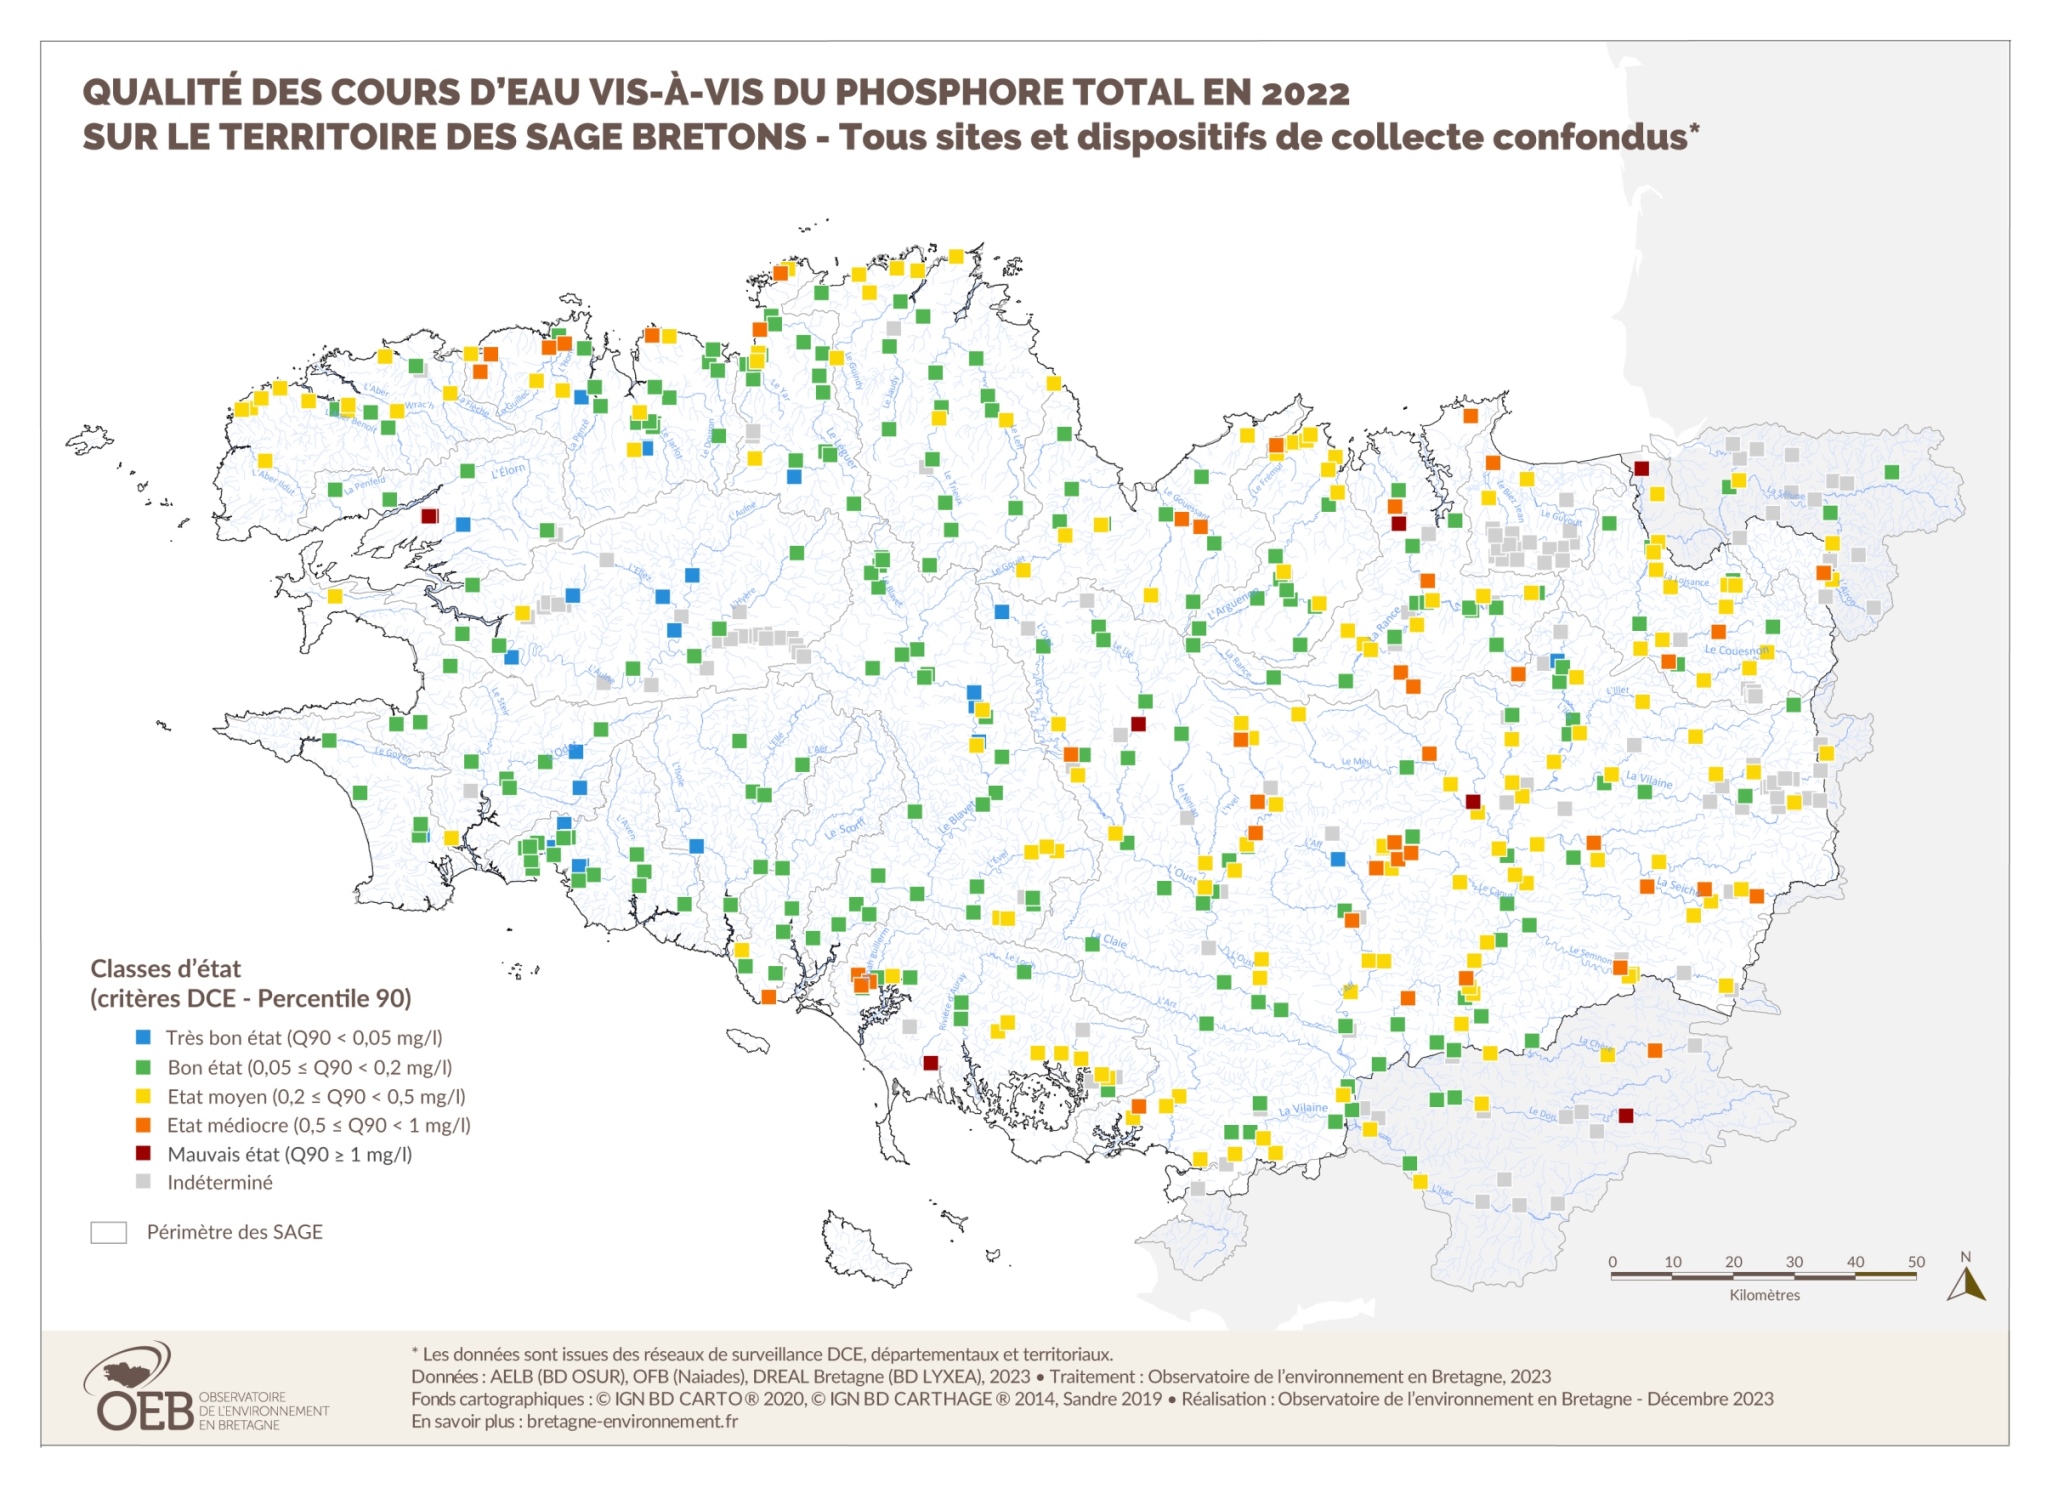 Qualité des cours d'eau bretons vis-à-vis du phosphore total en 2022